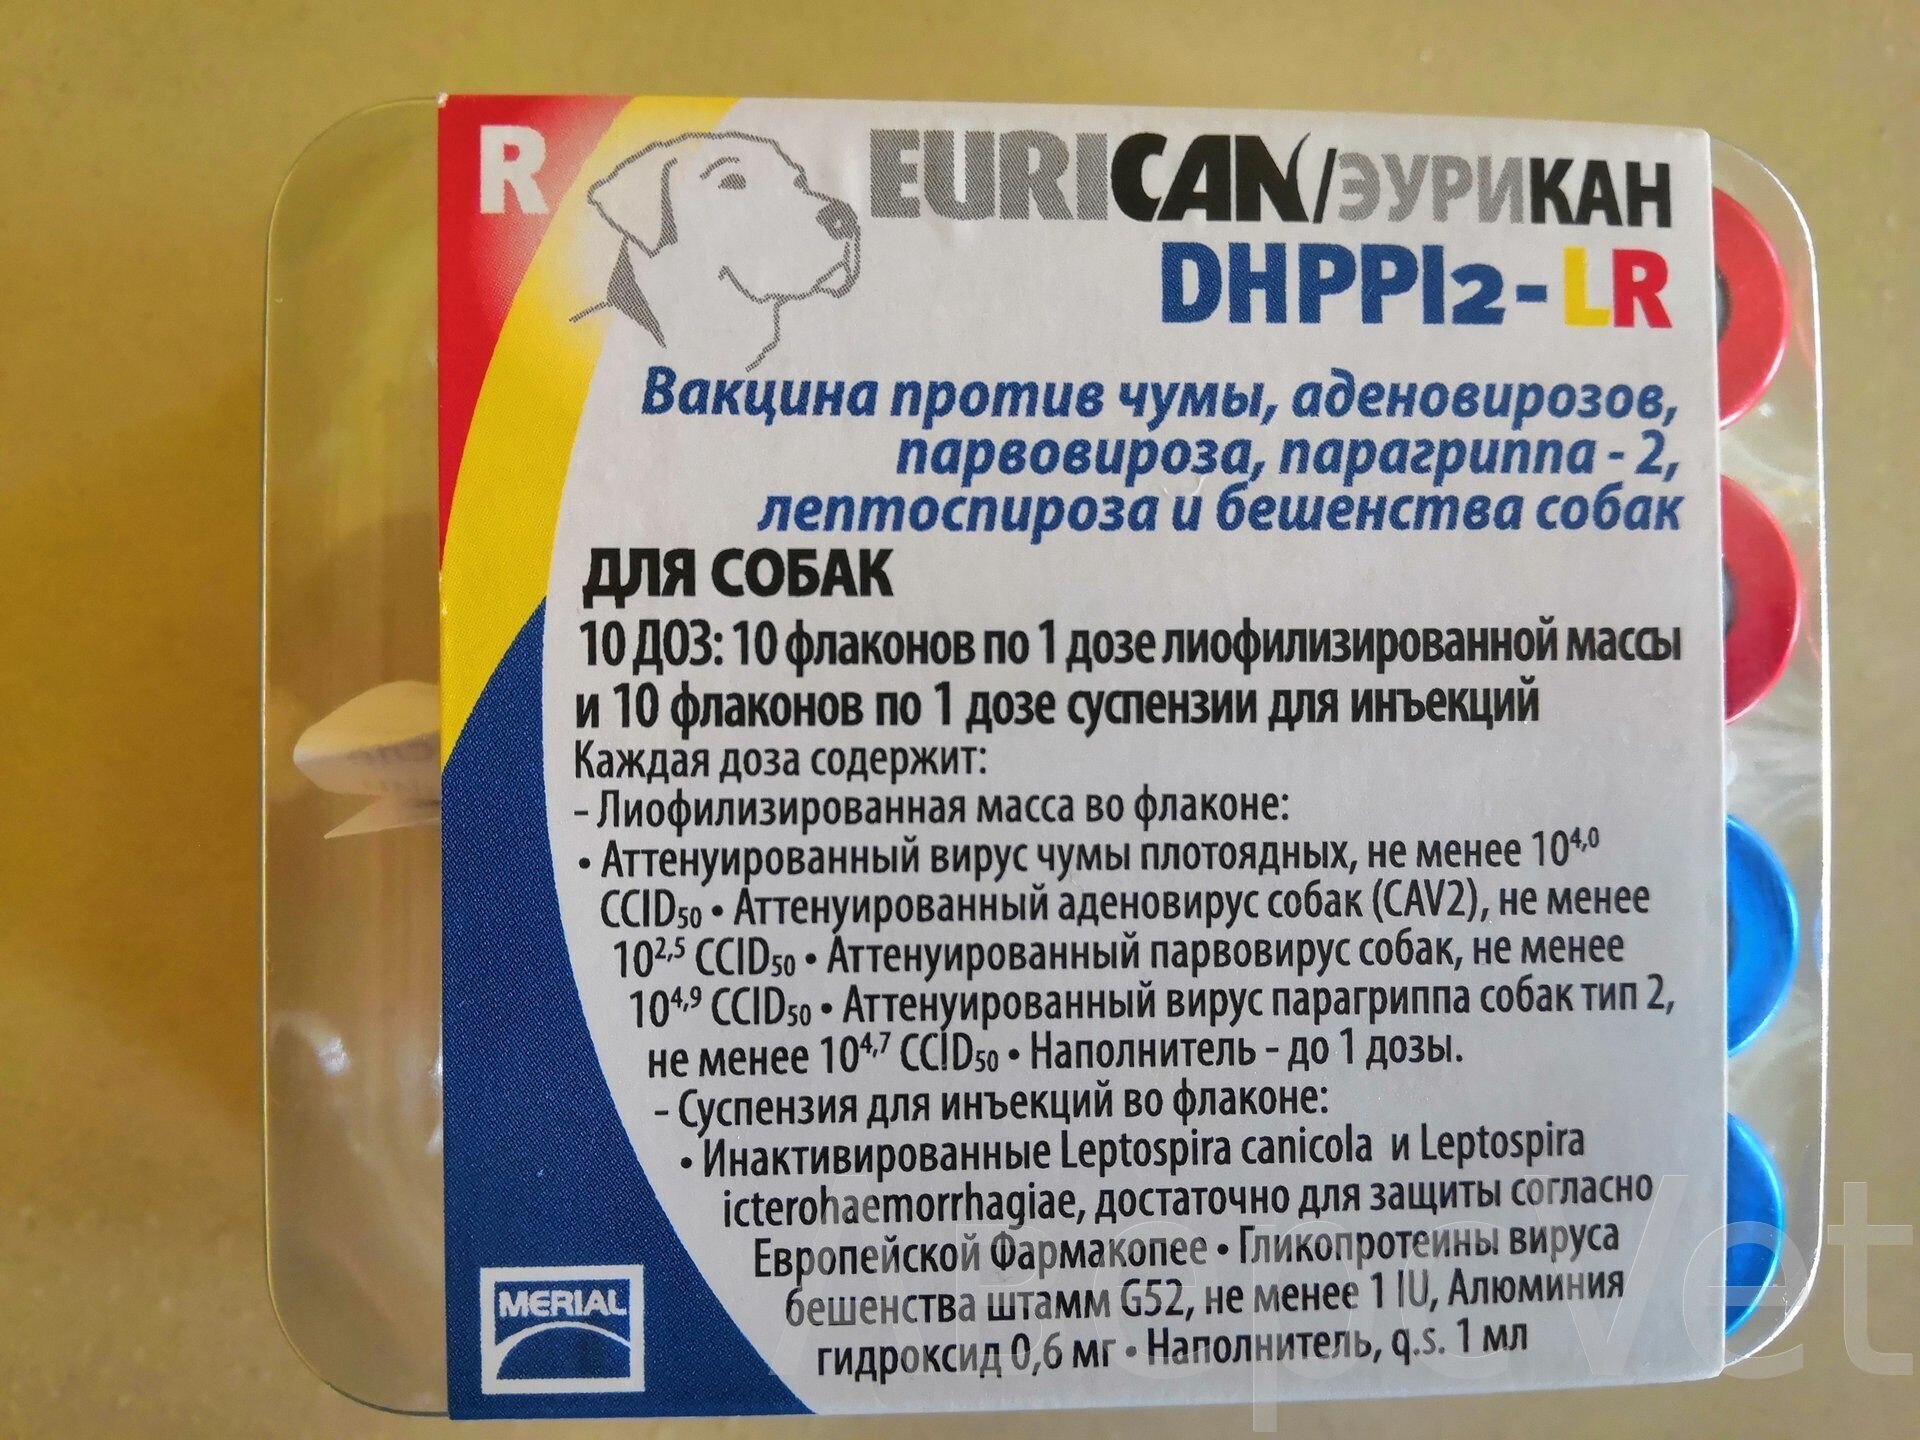 Вакцина эурикан lr. Eurican dhppi2. Вакцина вангард7. Эурикан dhppi2 вакцина для собак. Вакцина Эурикан dhppi2.